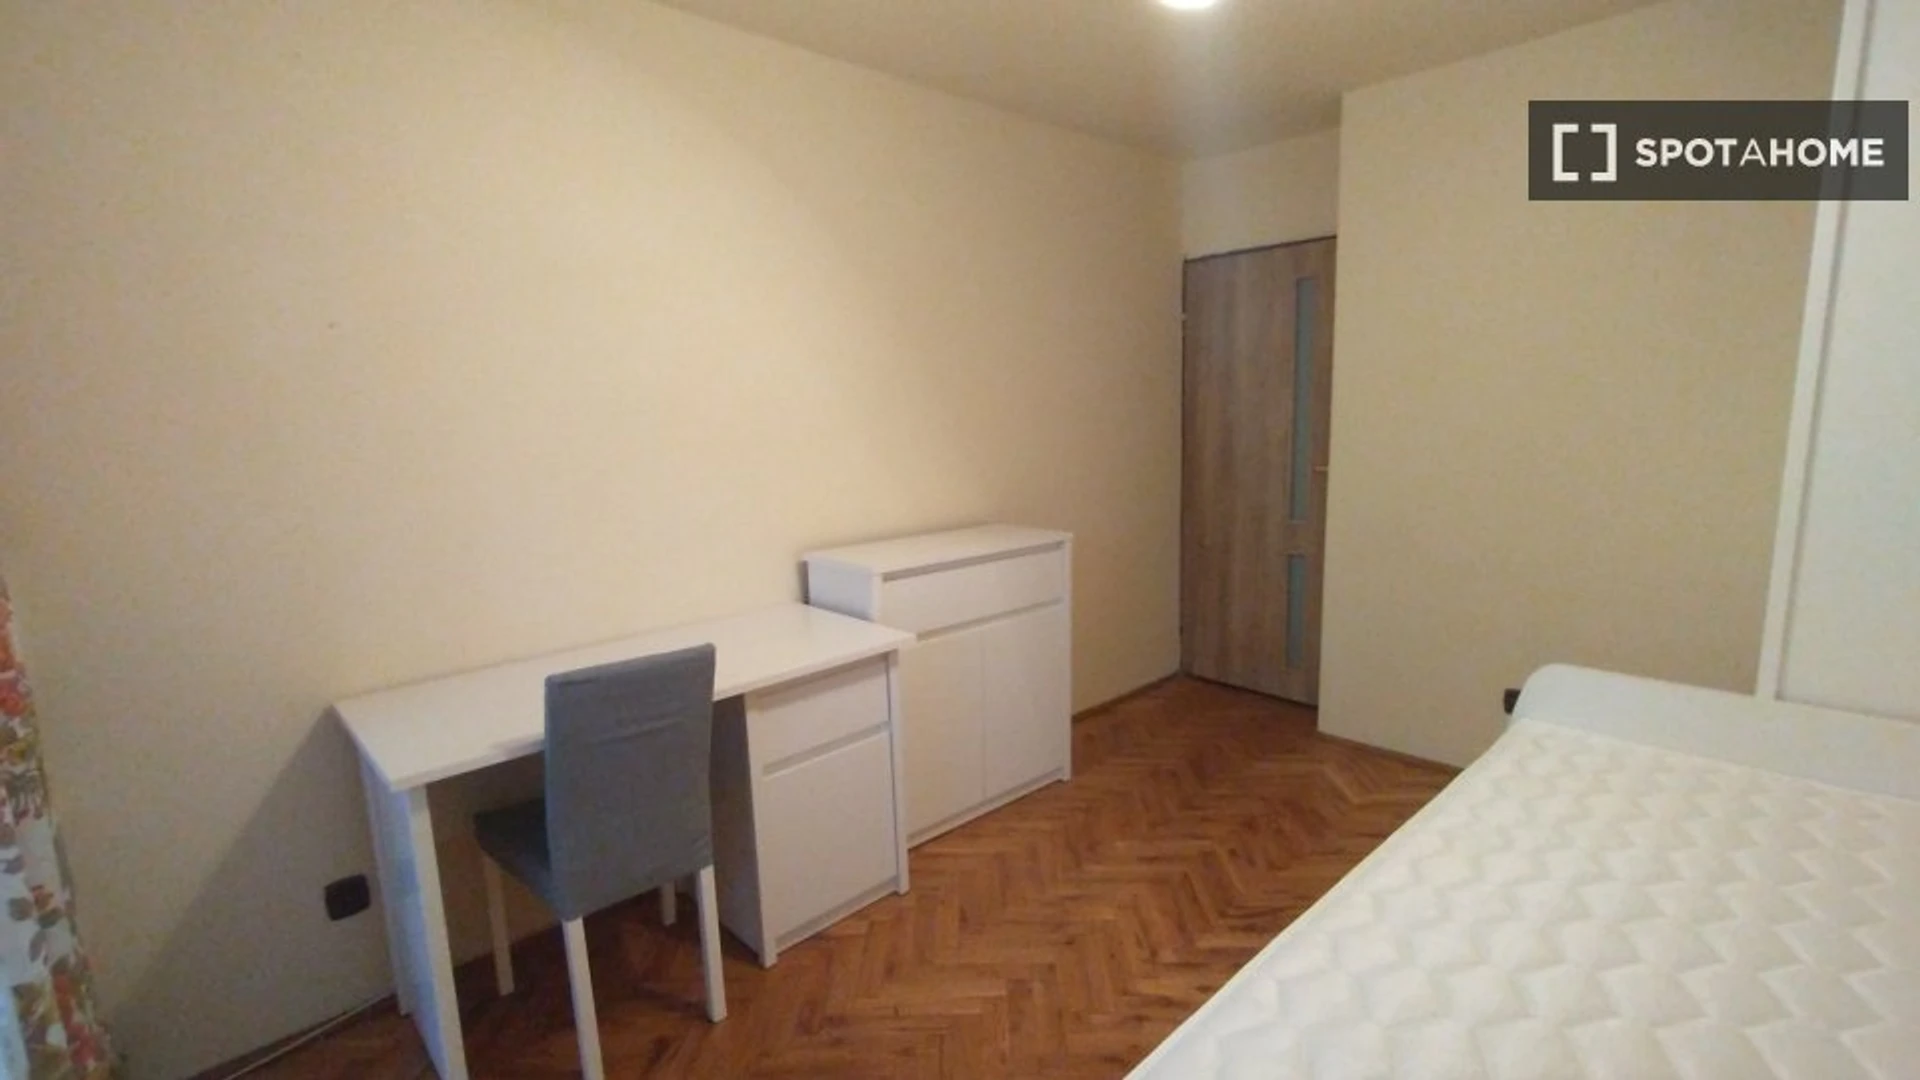 Quarto para alugar num apartamento partilhado em Lublin